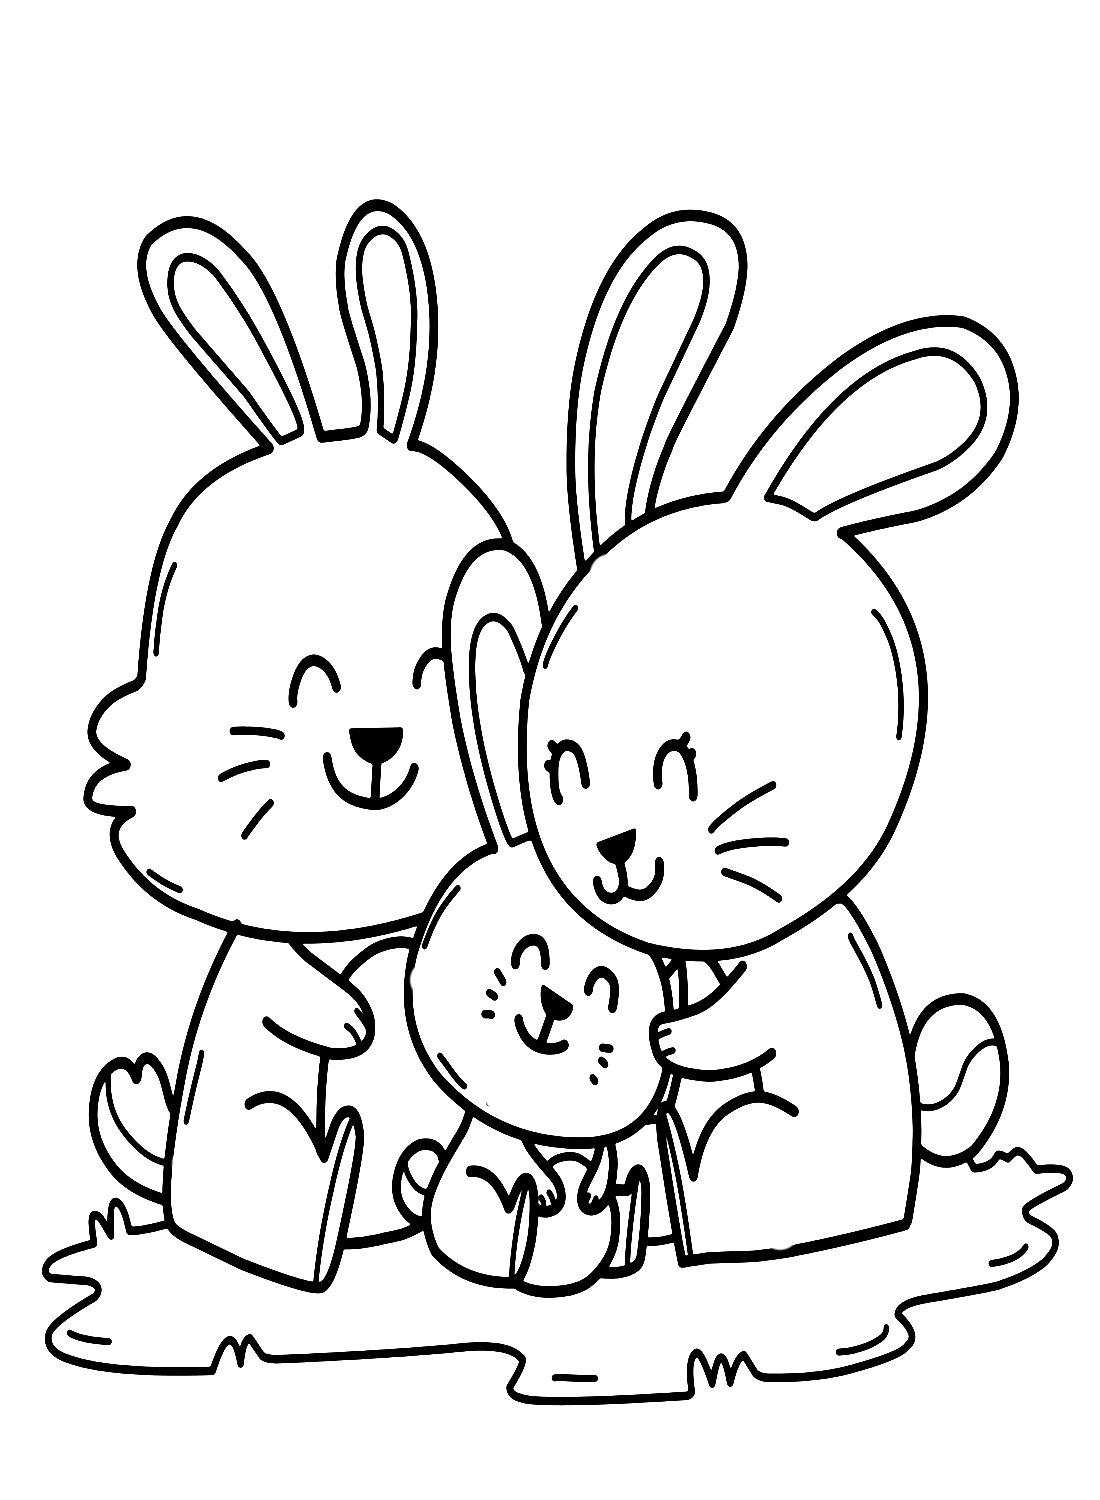 Famille de lapins s'embrassant de Rabbit